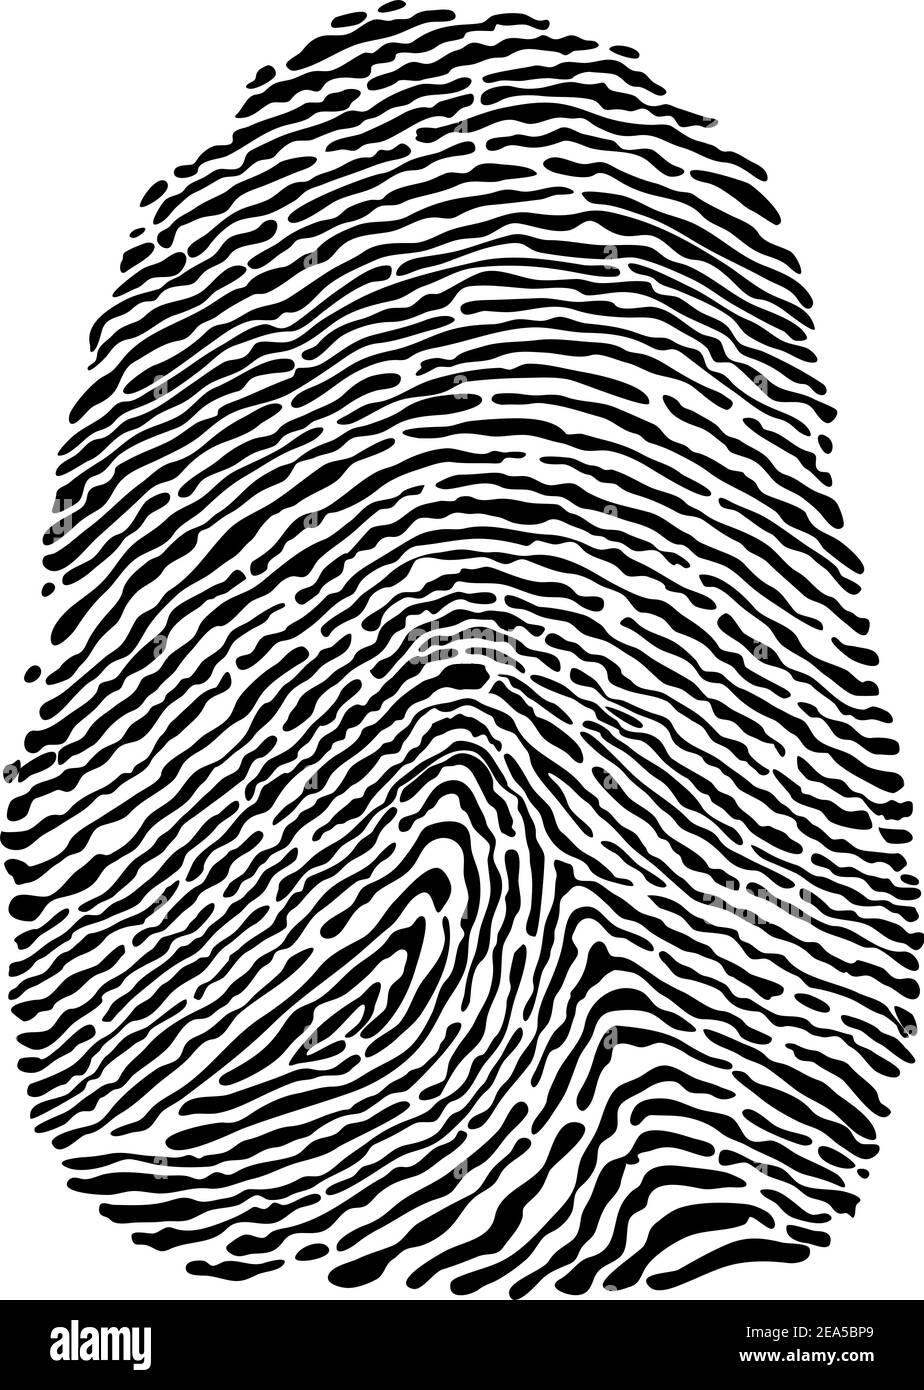 Le impronte digitali delle persone sono isolate su sfondo bianco per la progettazione di concept di sicurezza Illustrazione Vettoriale